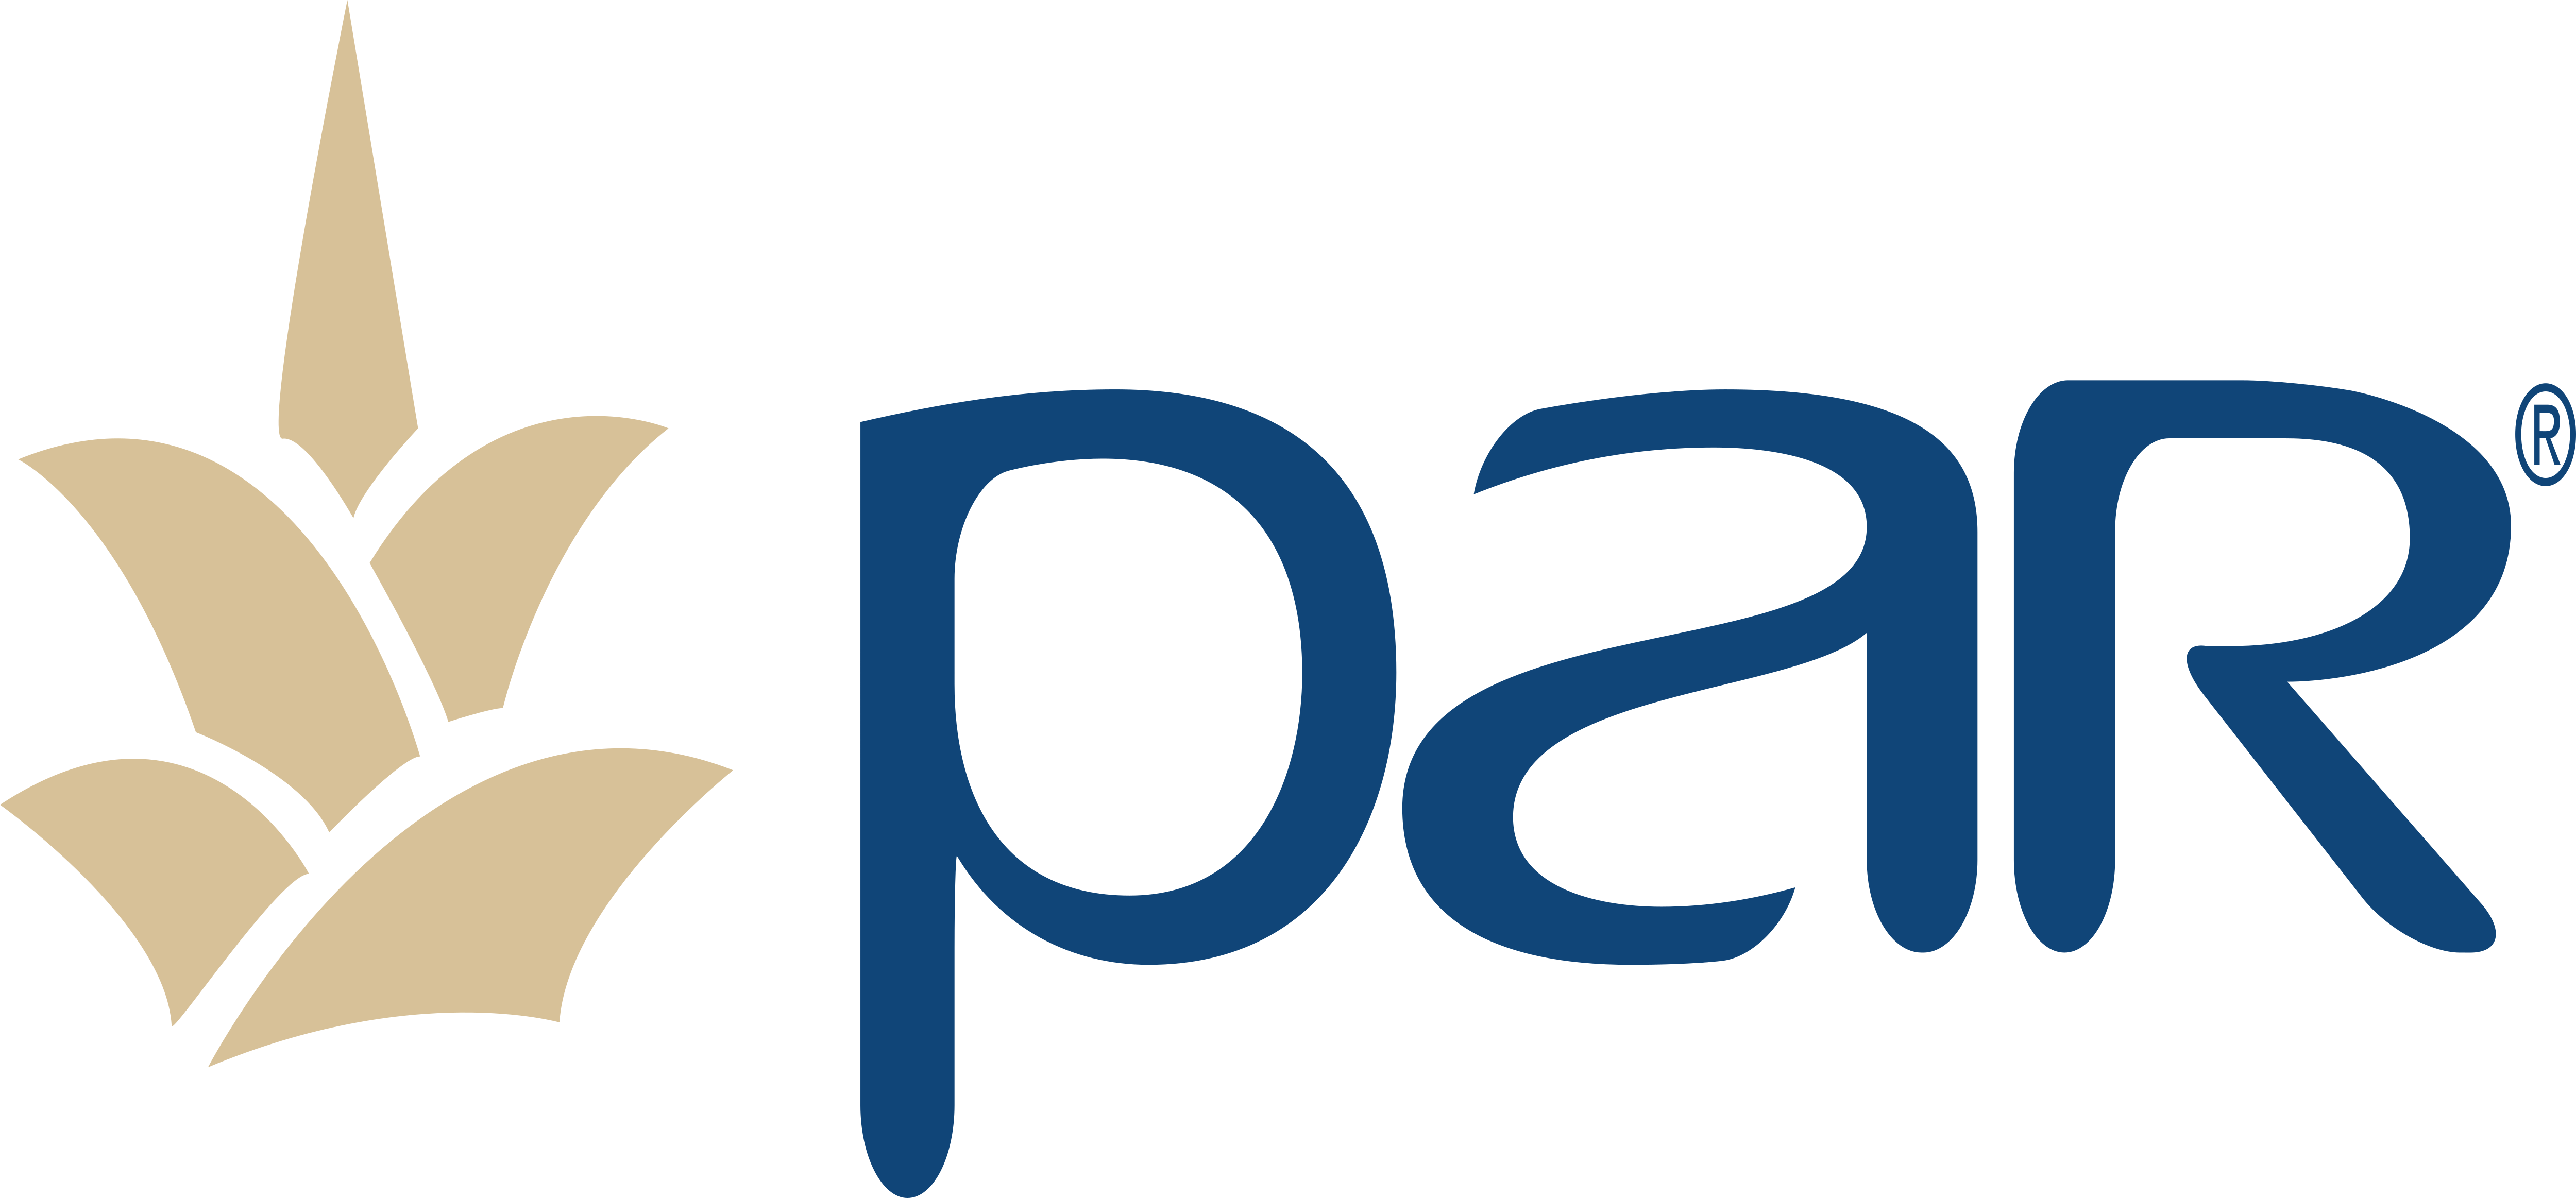 PAR Technology Corporation partner